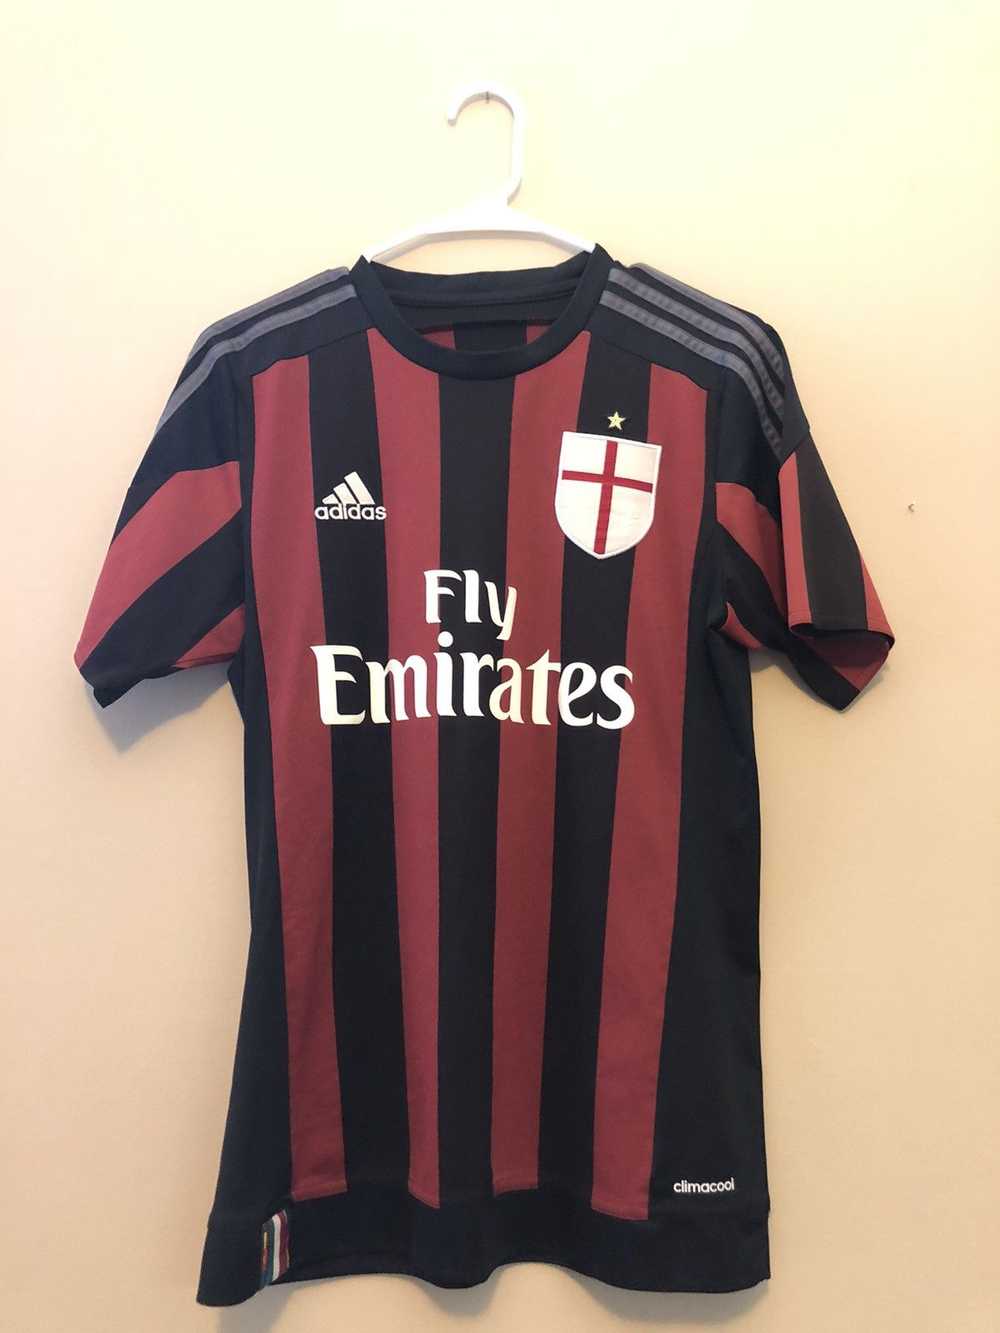 Adidas × Soccer Jersey AC Milan Jersey - image 1